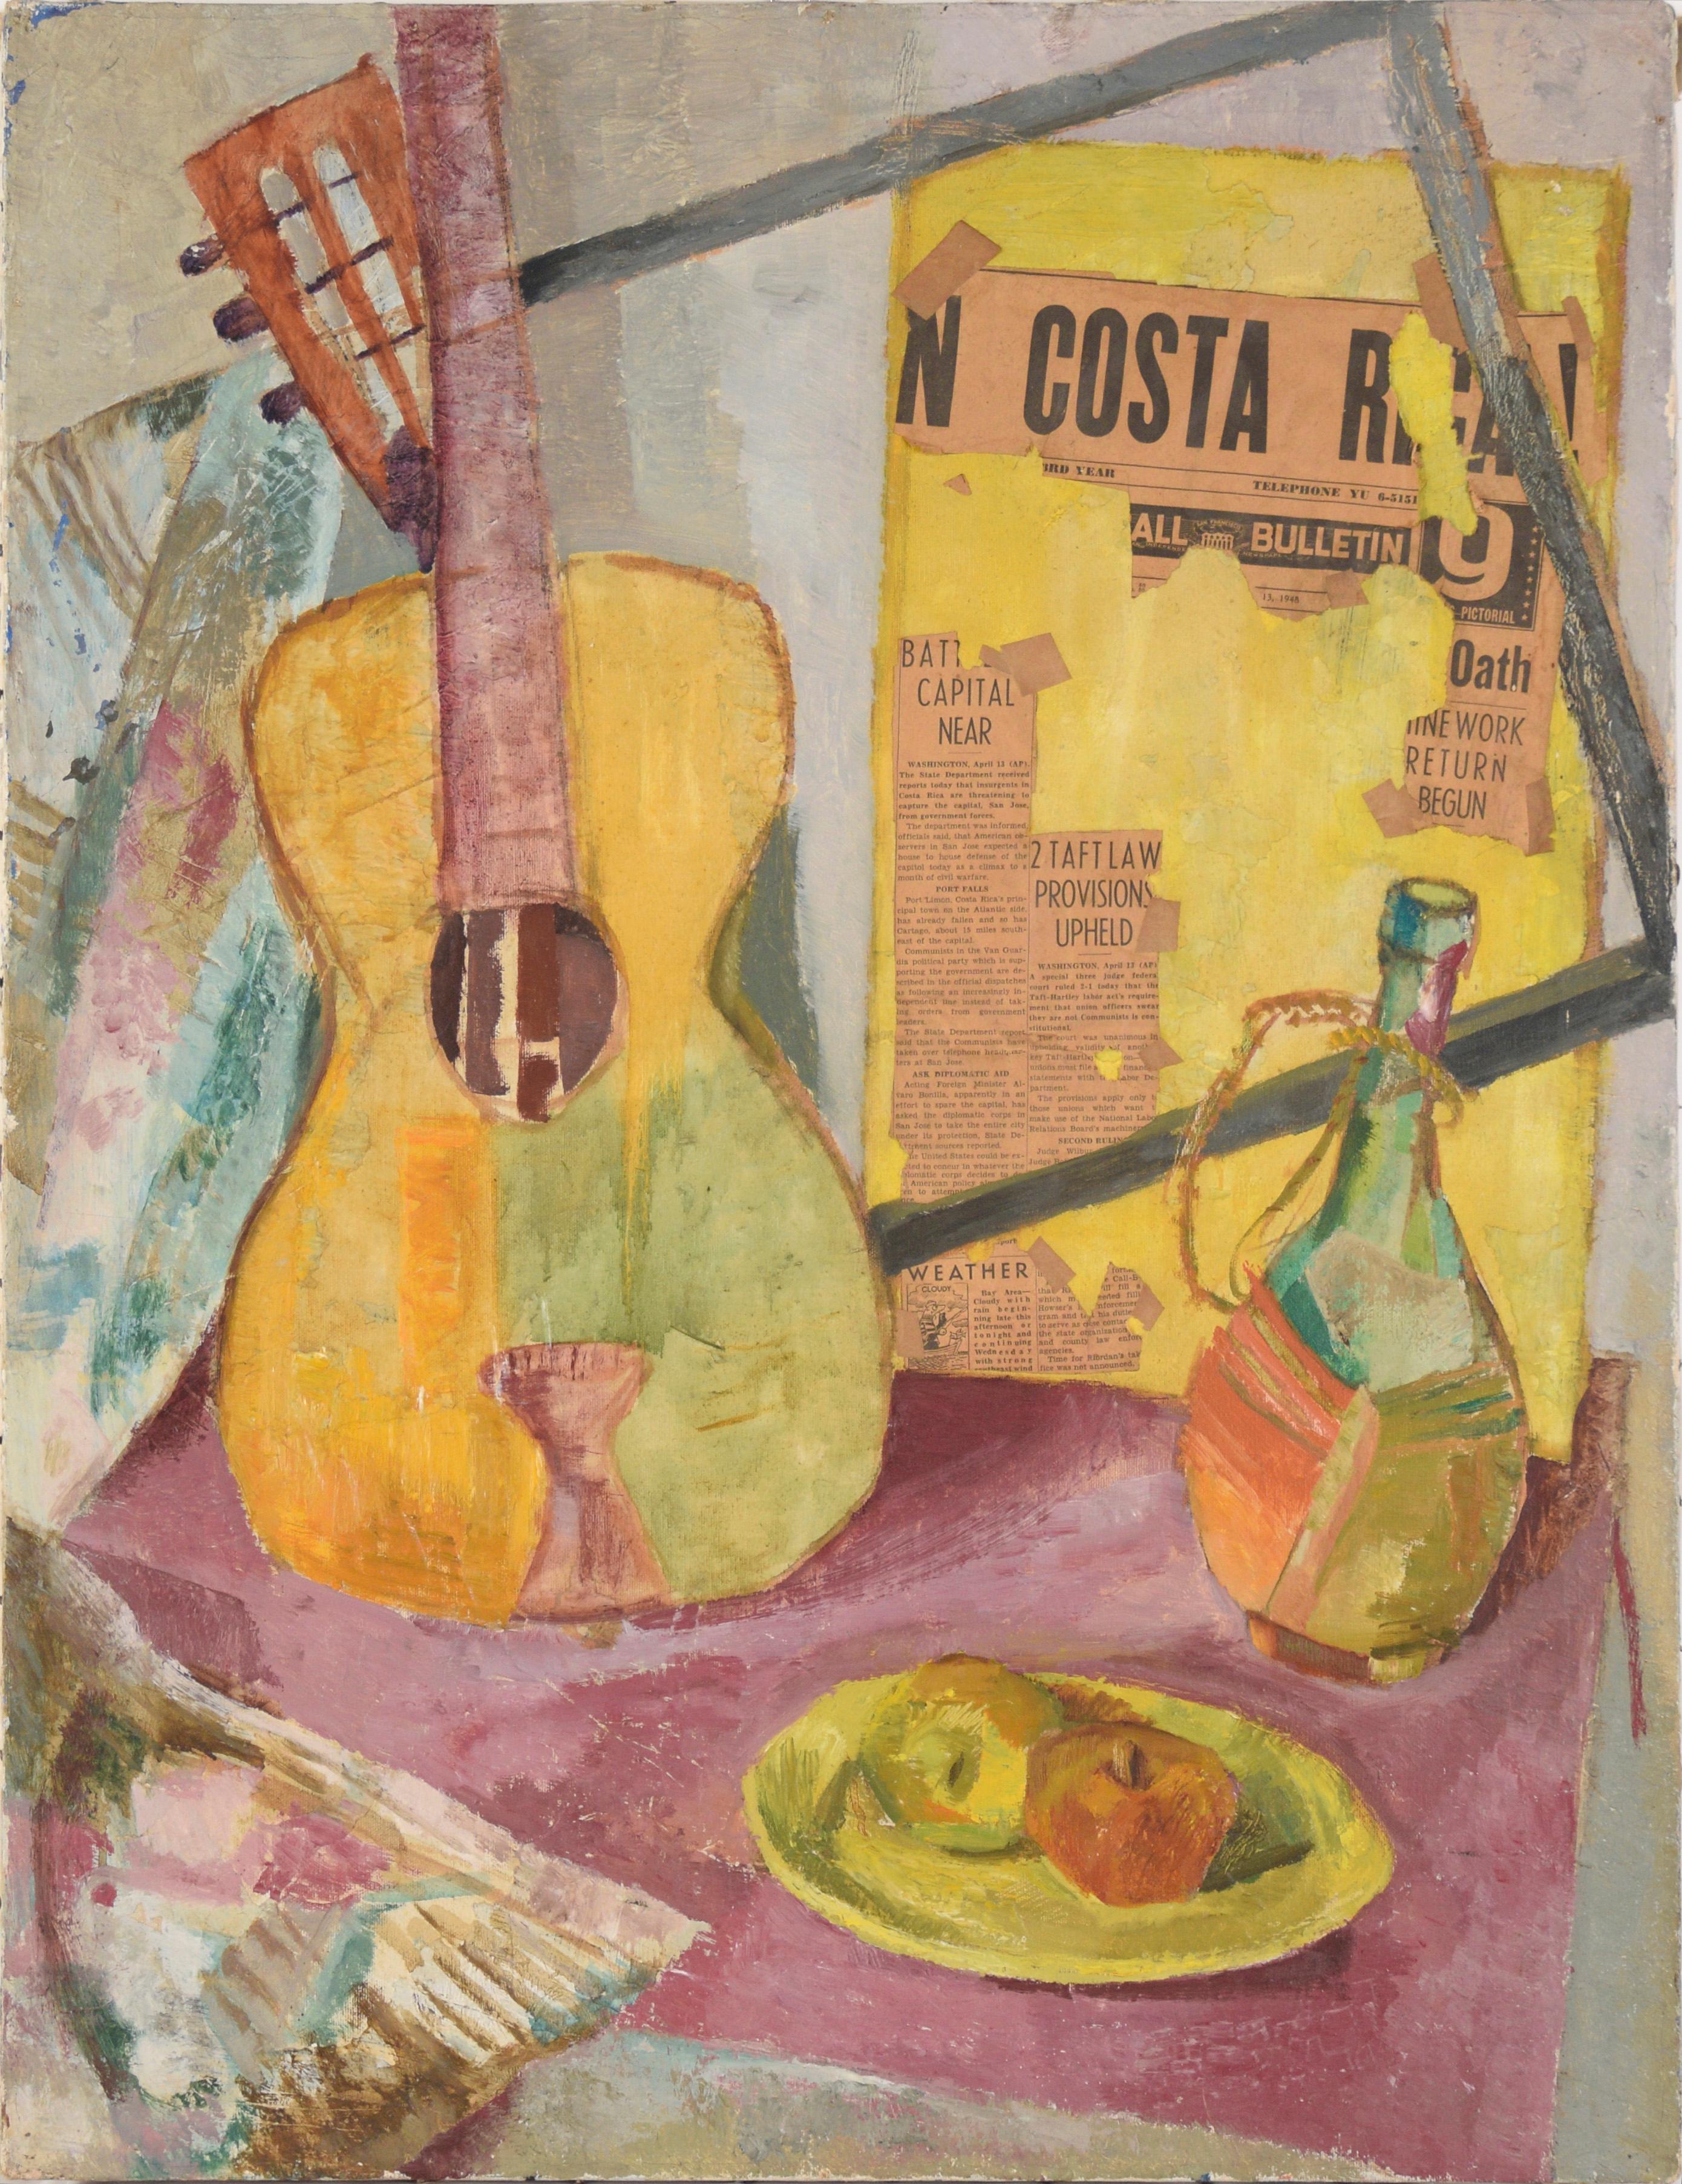 Costa Rica! Stillleben mit Gitarre, Obst, Wein und Zeitungsdruck in Öl auf Leinwand